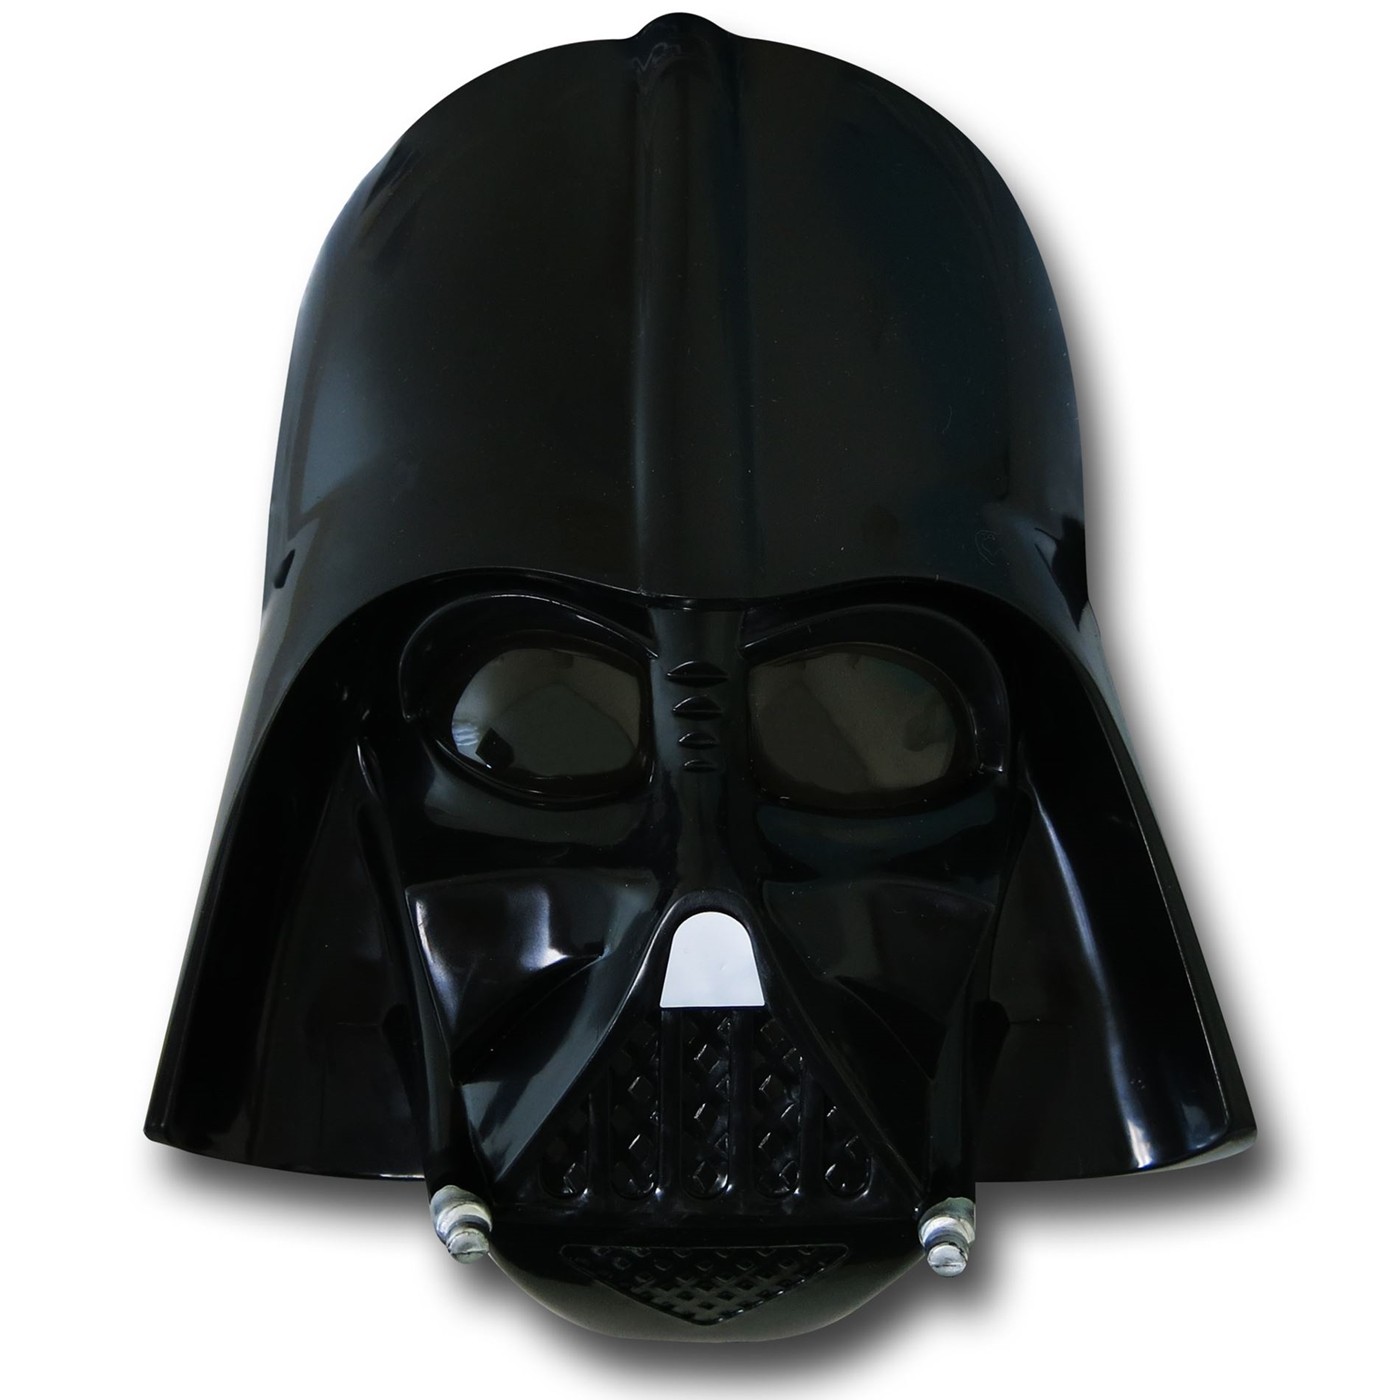 Star Wars Darth Vader Mask & Cape Set